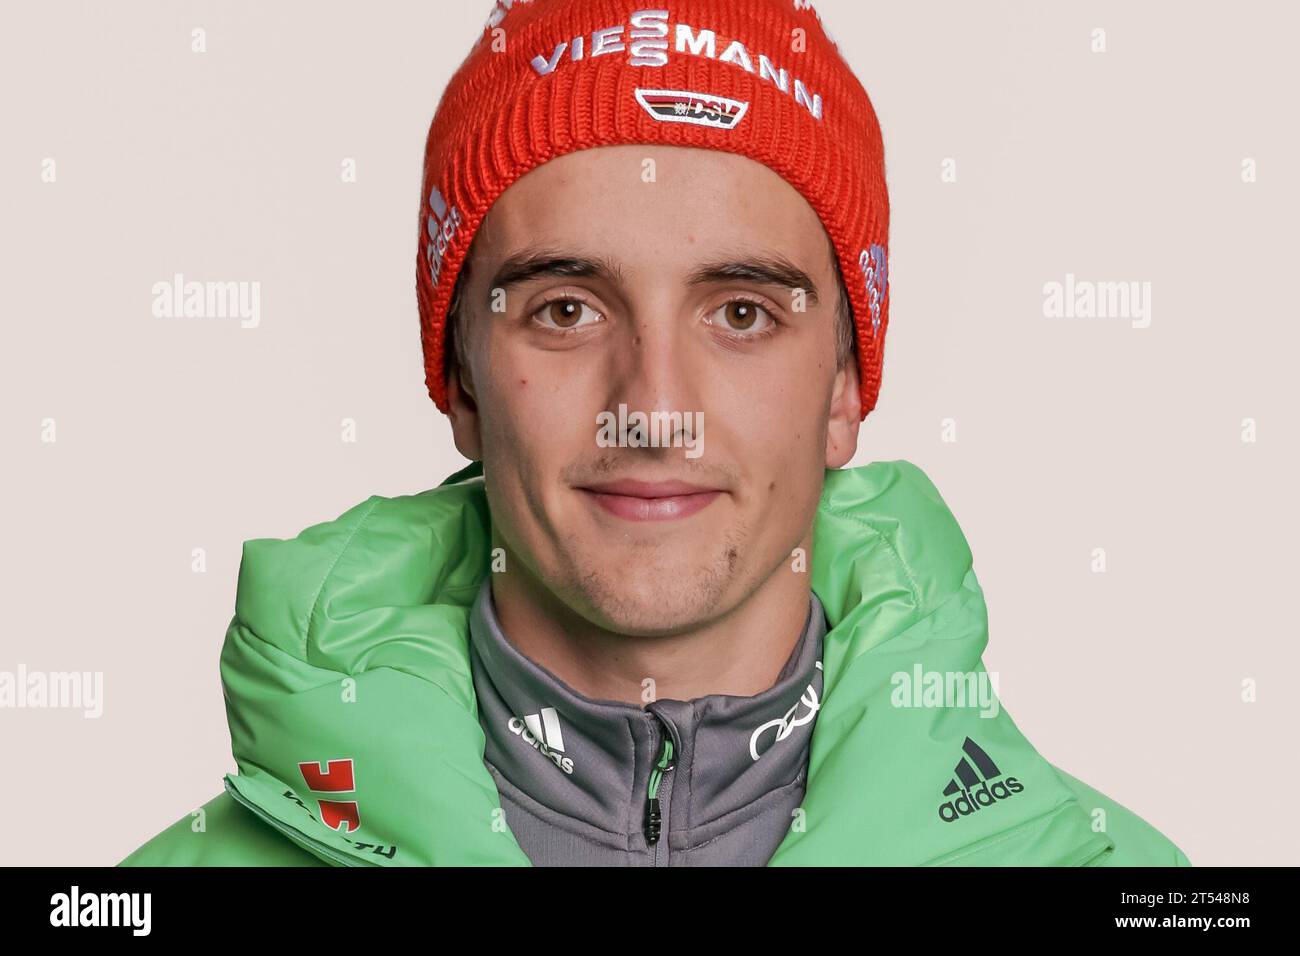 Brugger, Janosch Portrait Deutscher Ski Verband - Fototermin in Ingolstadt, Deutschland AM 22.10.2016 Foto Stock